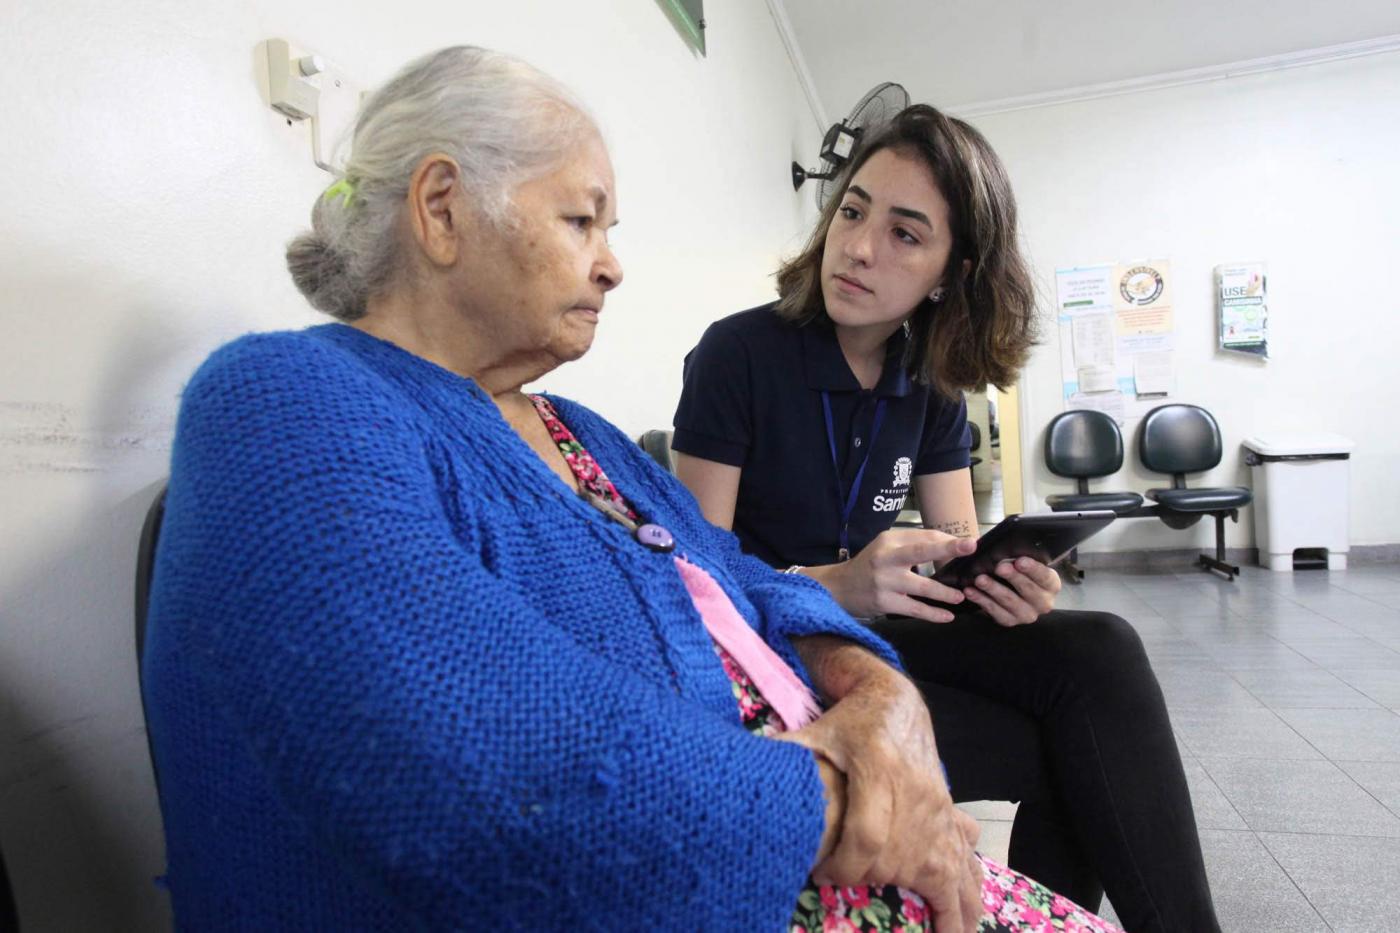 Estagiária da Ouvidoria conversa com idosa usuária de policlínica. Ambas estão sentadas. A jovem faz anotação em um tablet